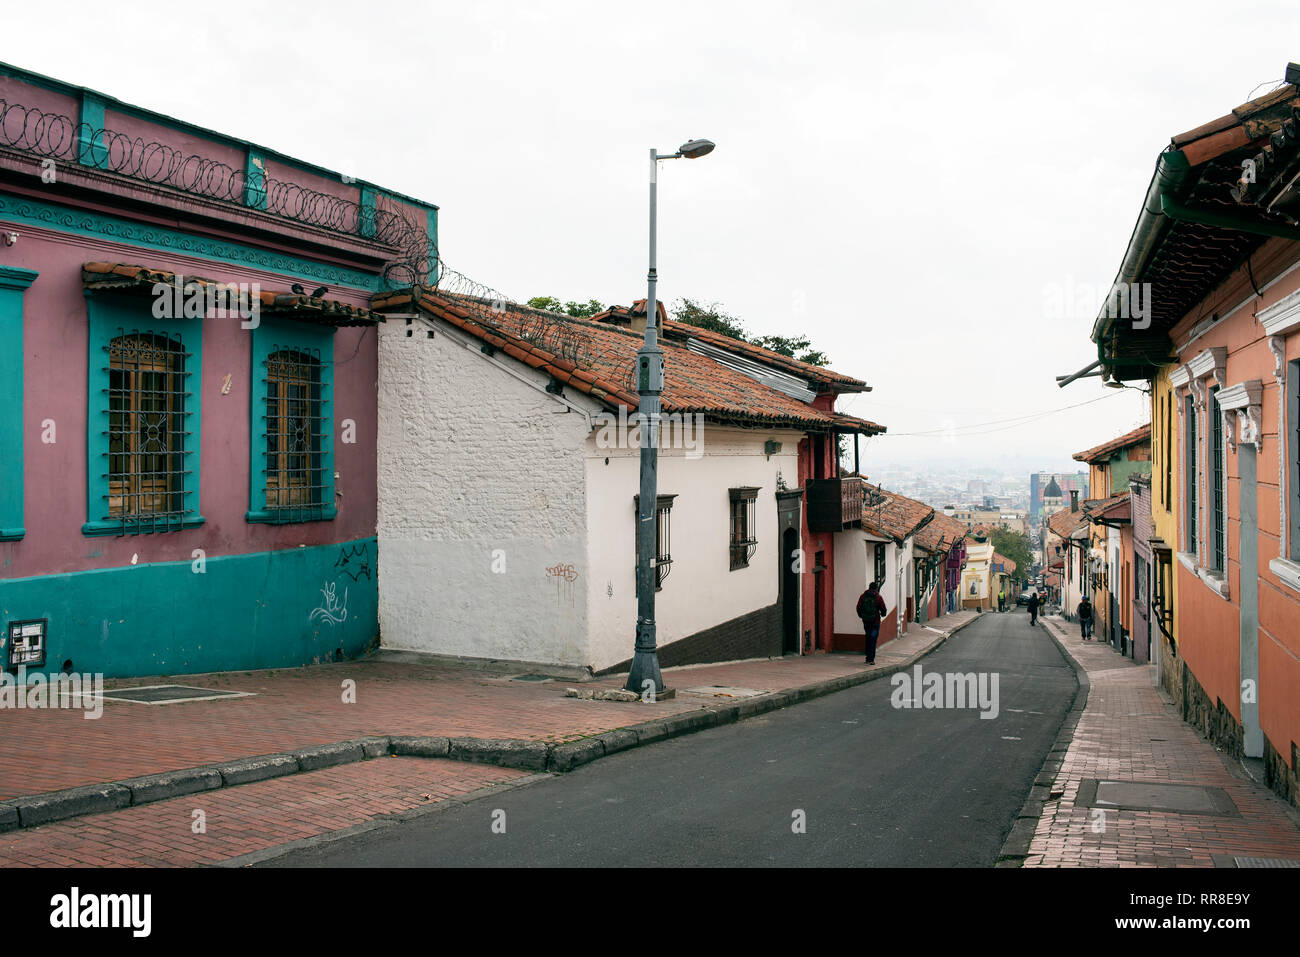 Vues rue colorés avec les habitants et les maisons coloniales espagnoles dans la Candelaria, le quartier historique de Bogota, Colombie. Sep 2018 Banque D'Images